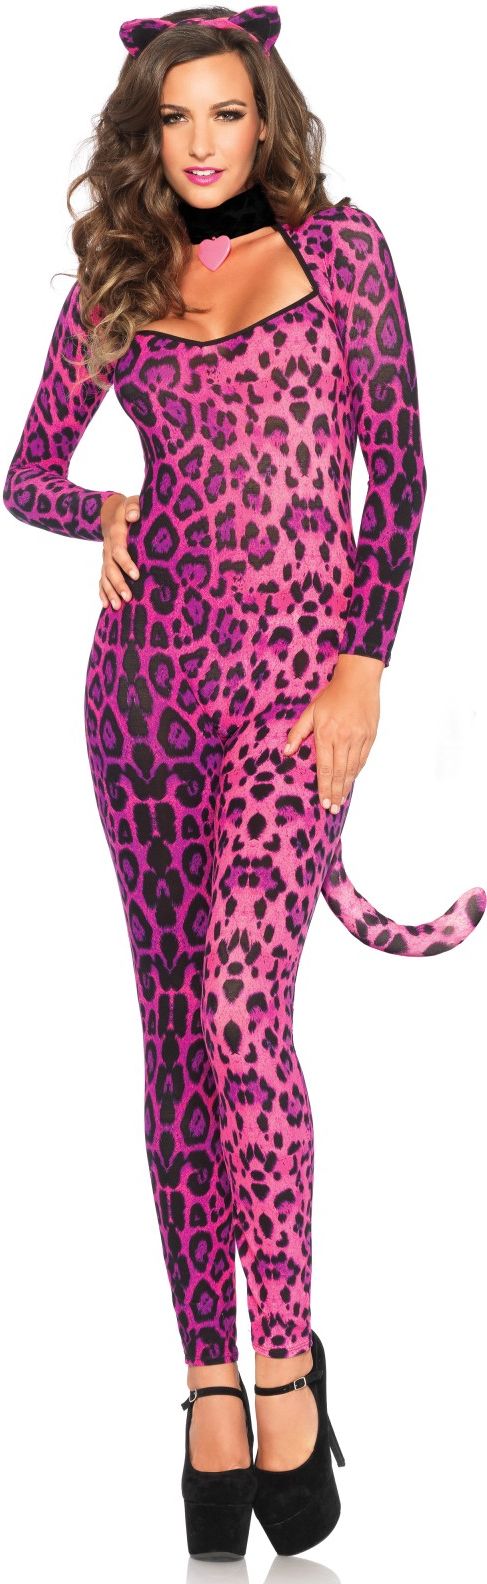 Roze luipaard kostuum